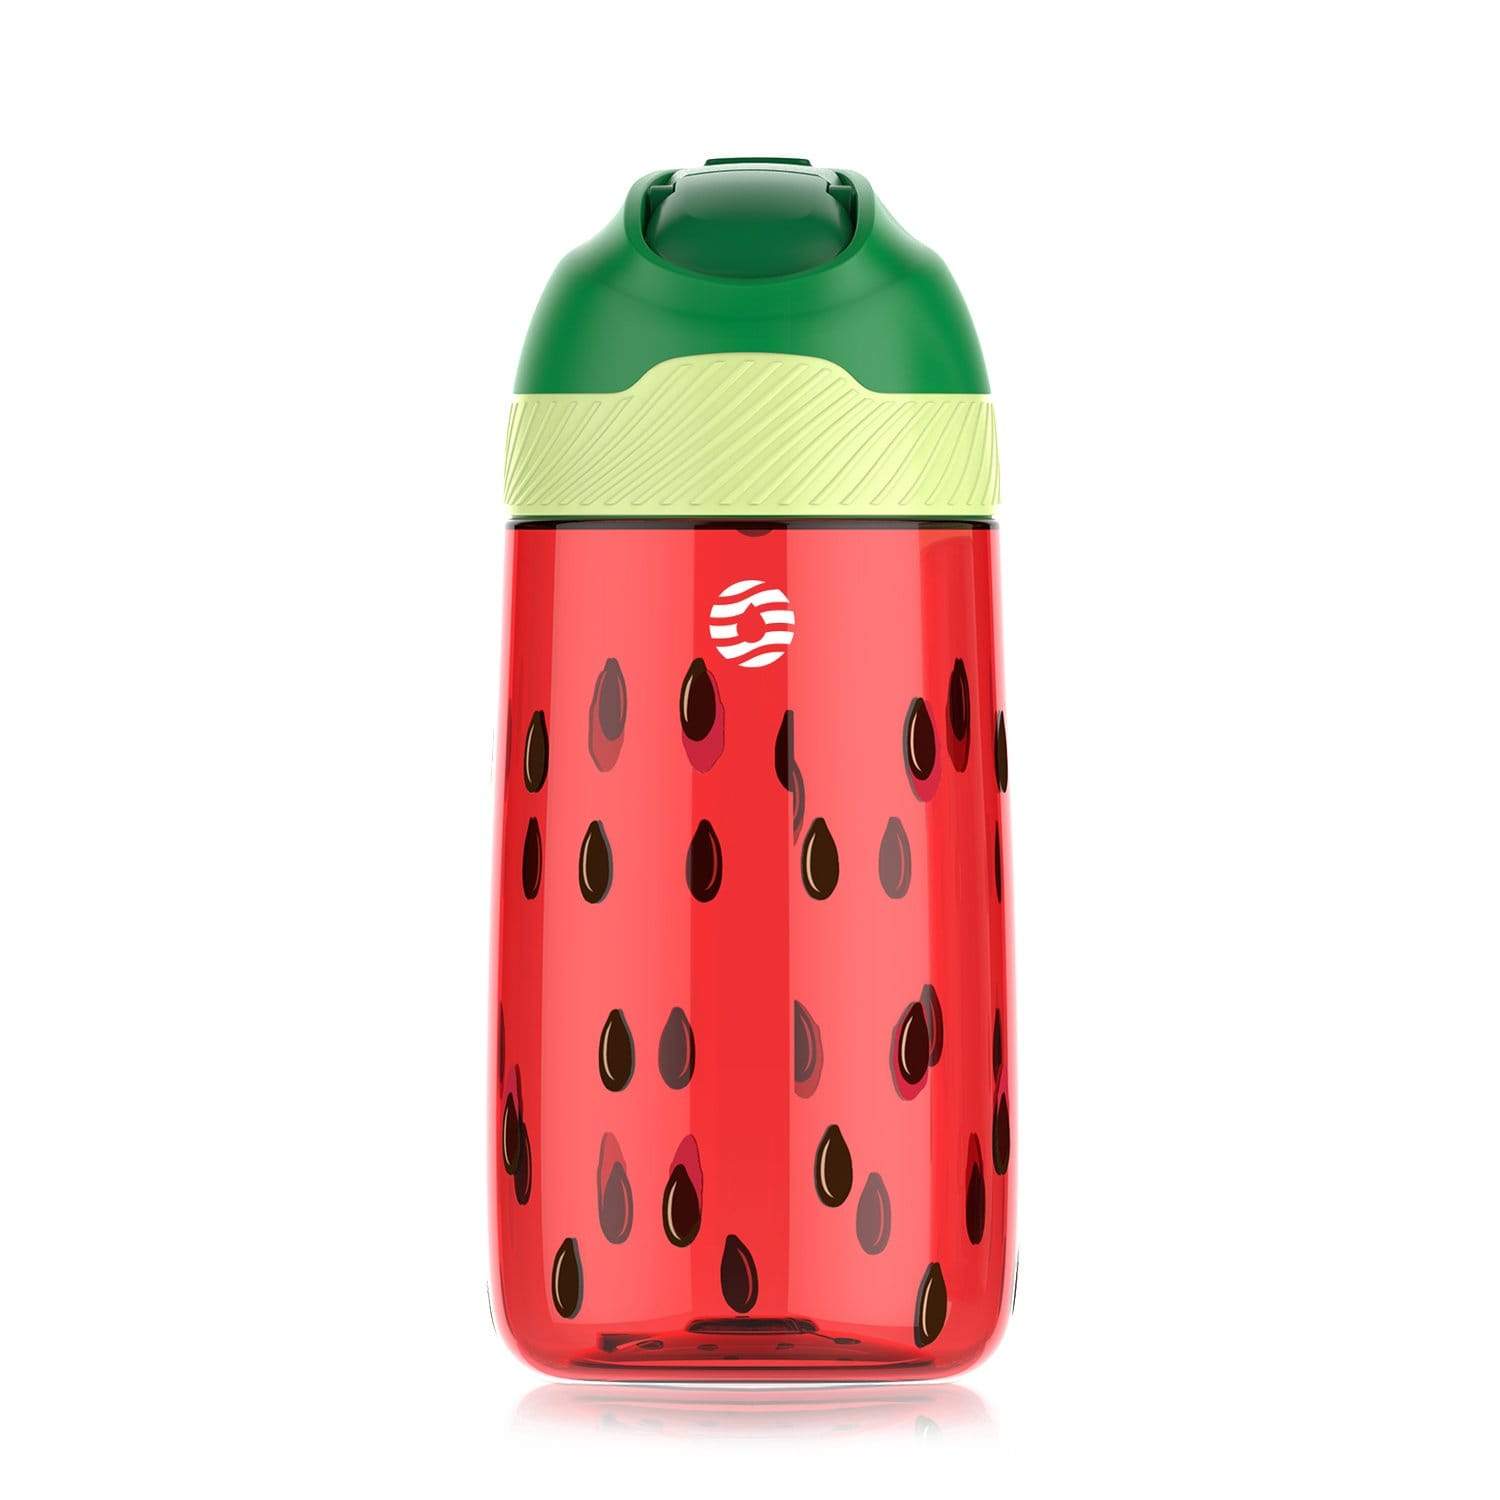 http://ltmate.com/cdn/shop/products/fjbottle-bottle-watermelon-kids-water-bottle-with-straw-lid-watermelon-16-oz-29569493827758.jpg?v=1628161902